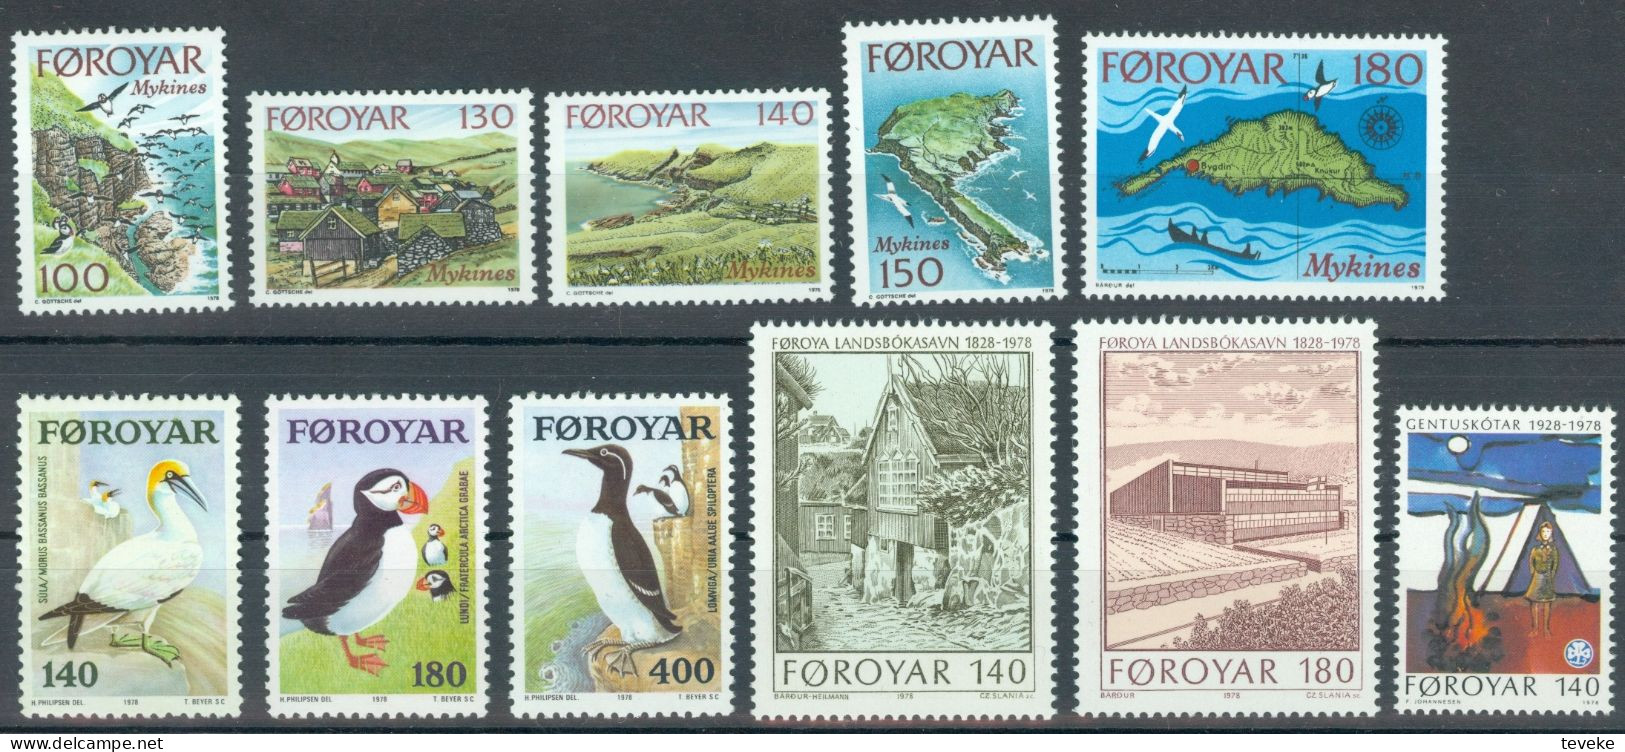 FAEROËR 1978 - MiNr. 31/41 - **/MNH - YEARSET - Färöer Inseln